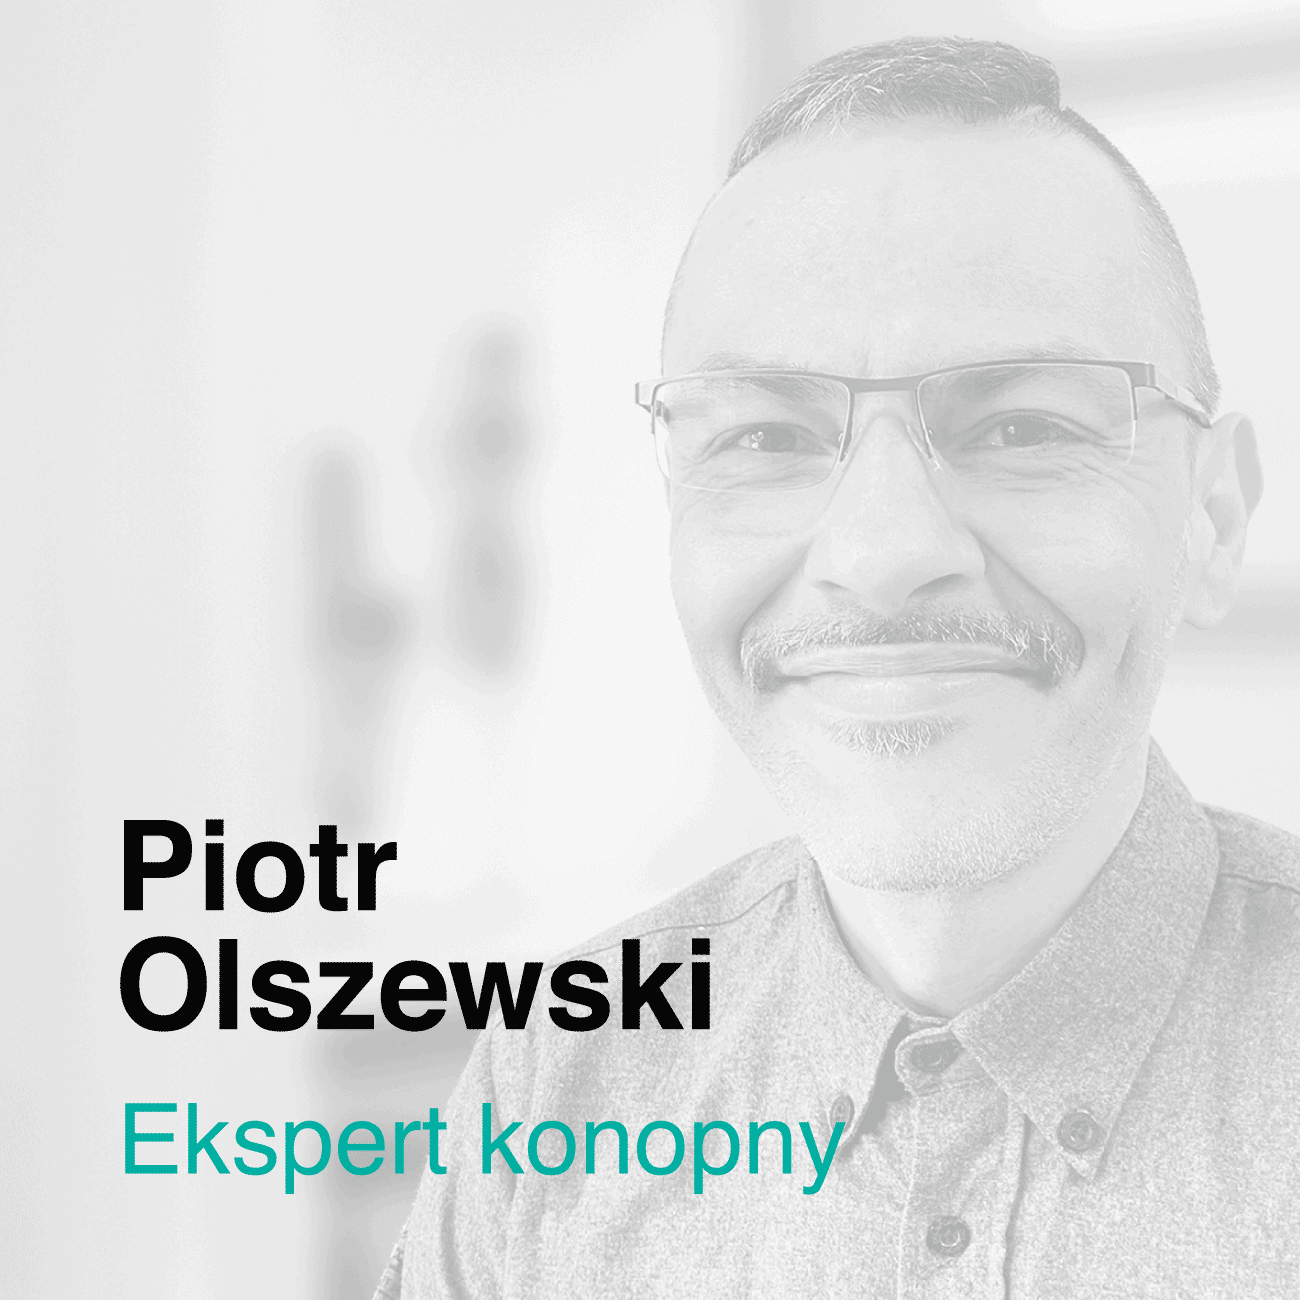 Piotr Olszewski - ekspert konopny